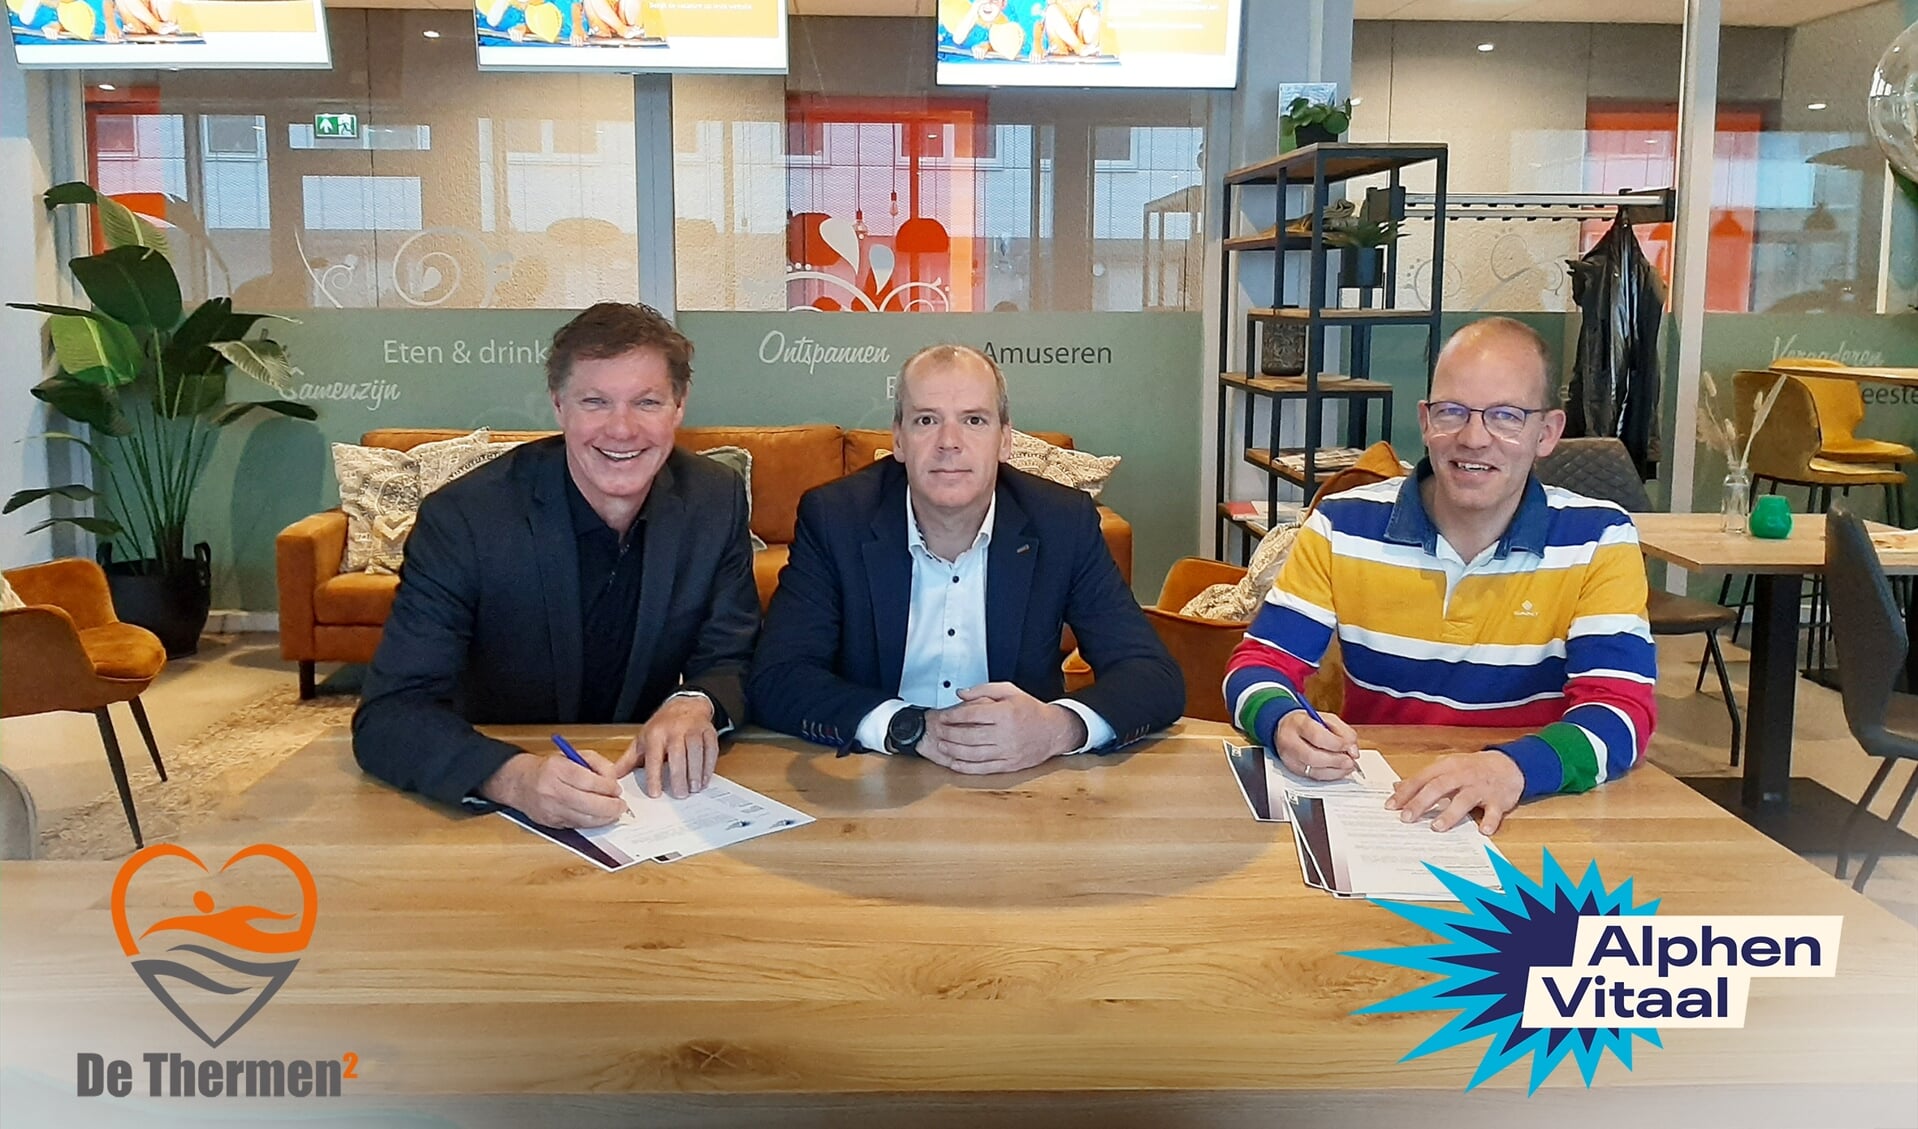  Remco Pielstroom, Wethouder Gert-Jan Schotanus en ArJan Wille ondertekenen het samenwerkingscontract.